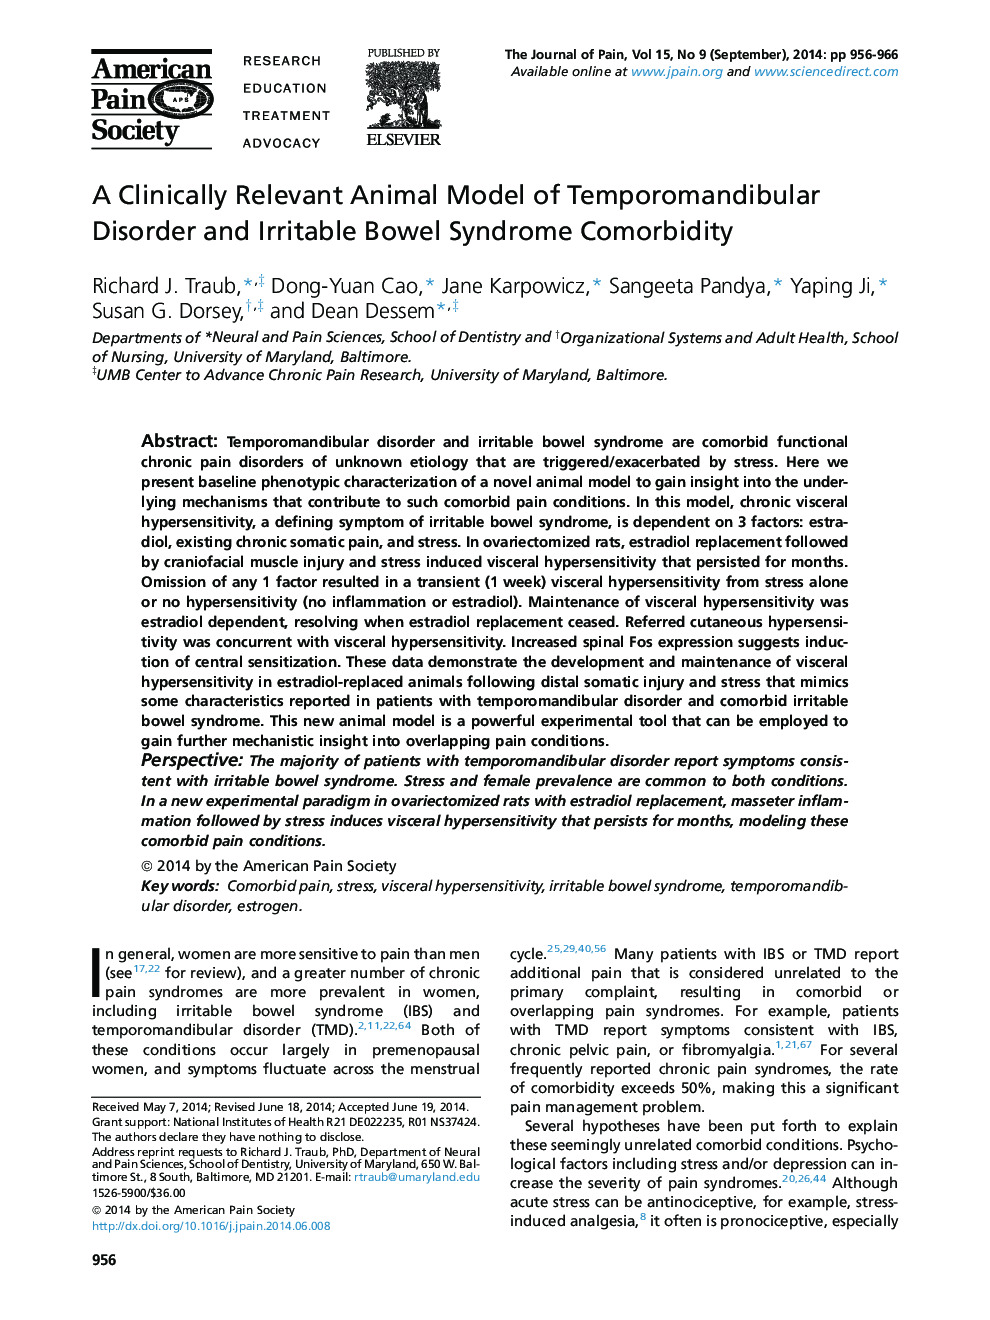 یک مدل حیوانی مرتبط با حیوانات مرتبط با اختلال تمپوروماندیبولار و همبستگی سندرم روده تحریک پذیر 